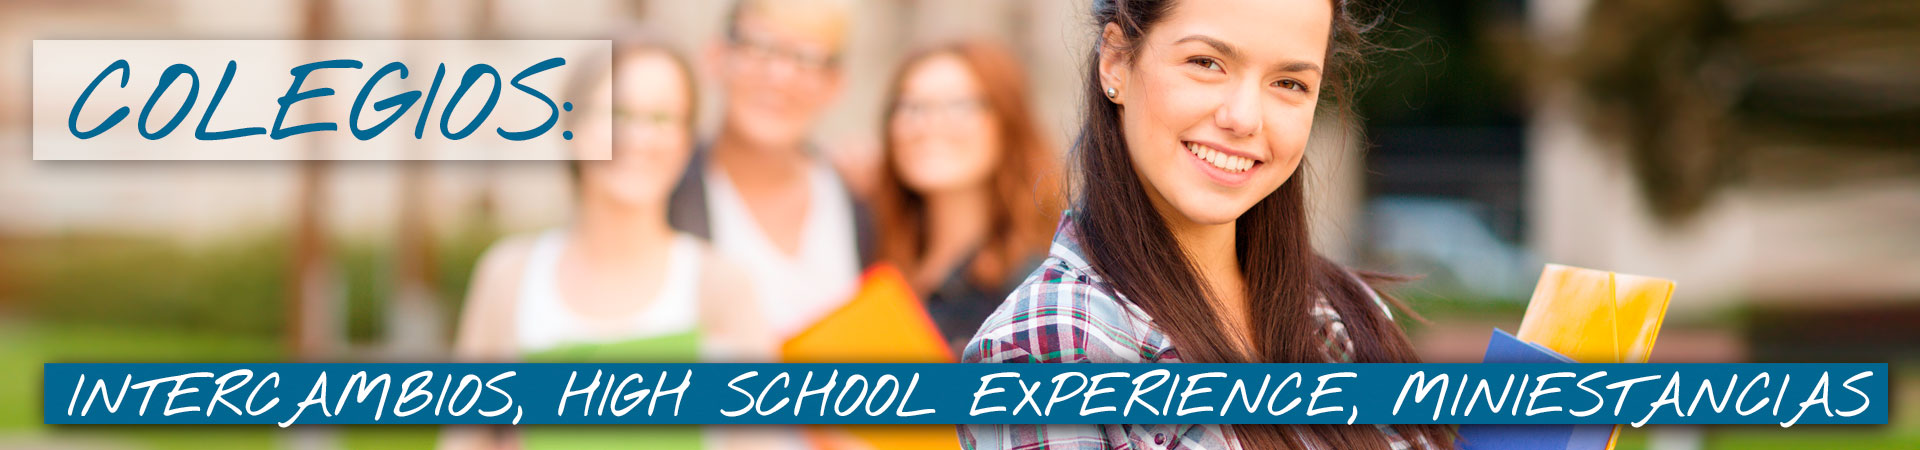 Colegios: intercambios, high school experience y mini estancias